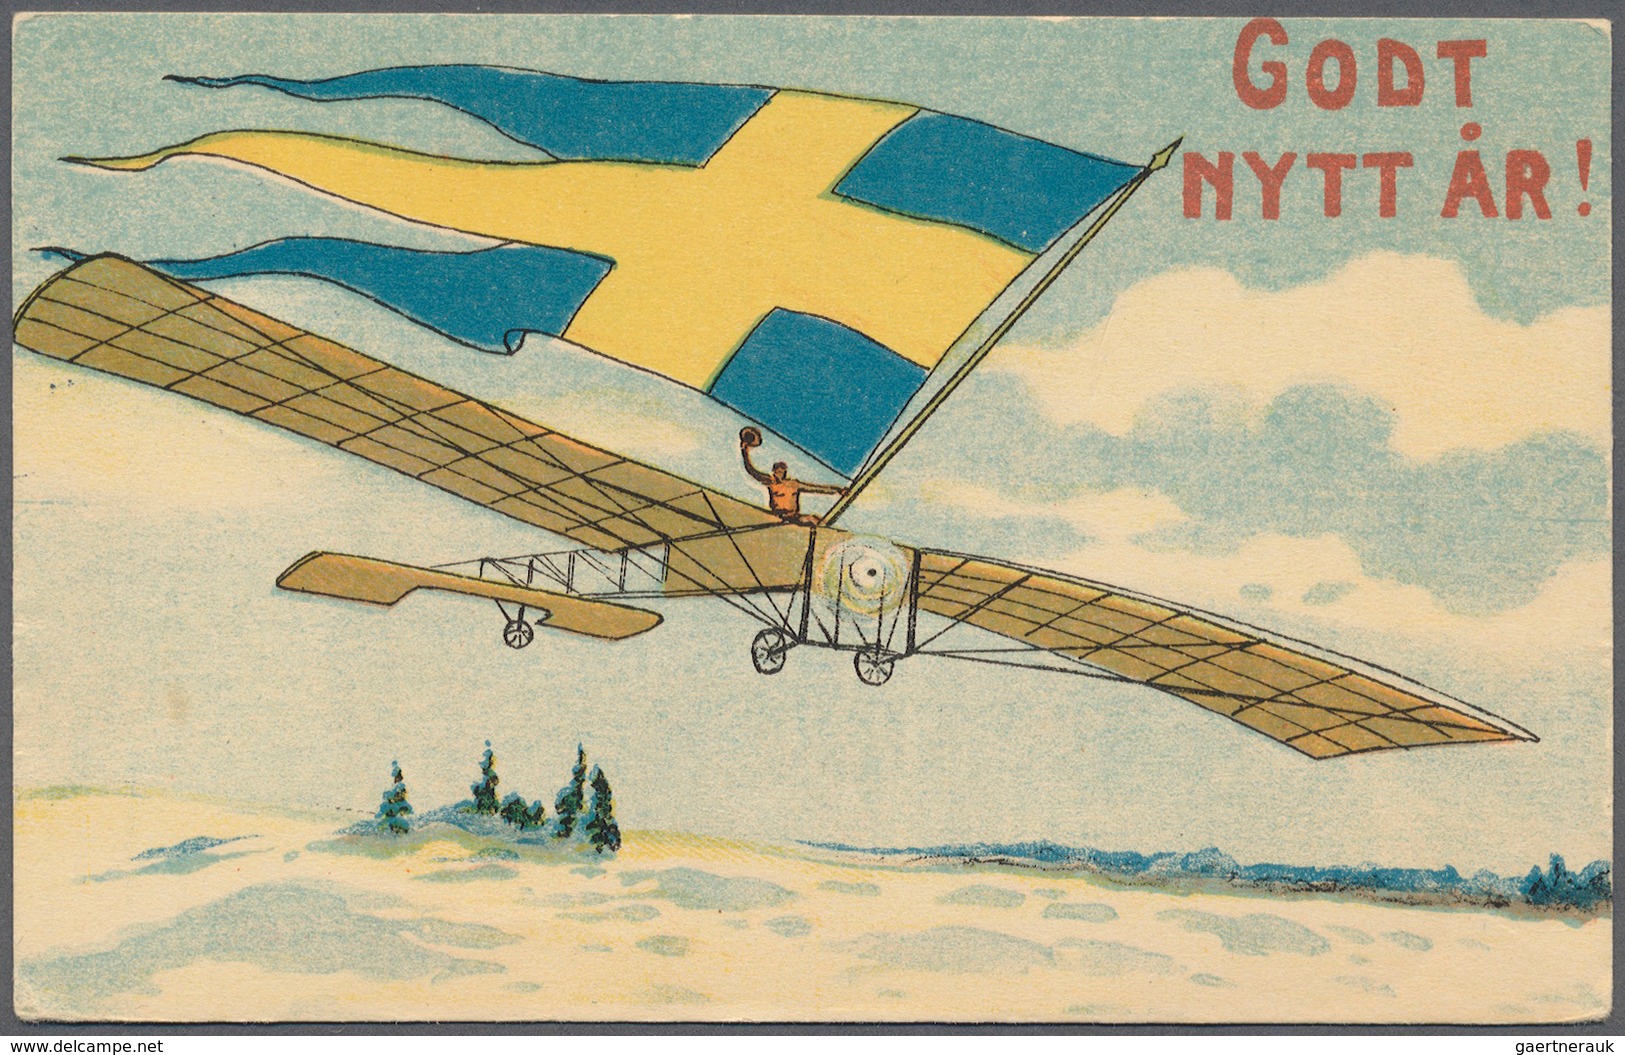 27964 Schweden: 1832 - 1949, umfangreiche Briefesammlung dabei im wesentlichen nur bessere Stück, dabei vi